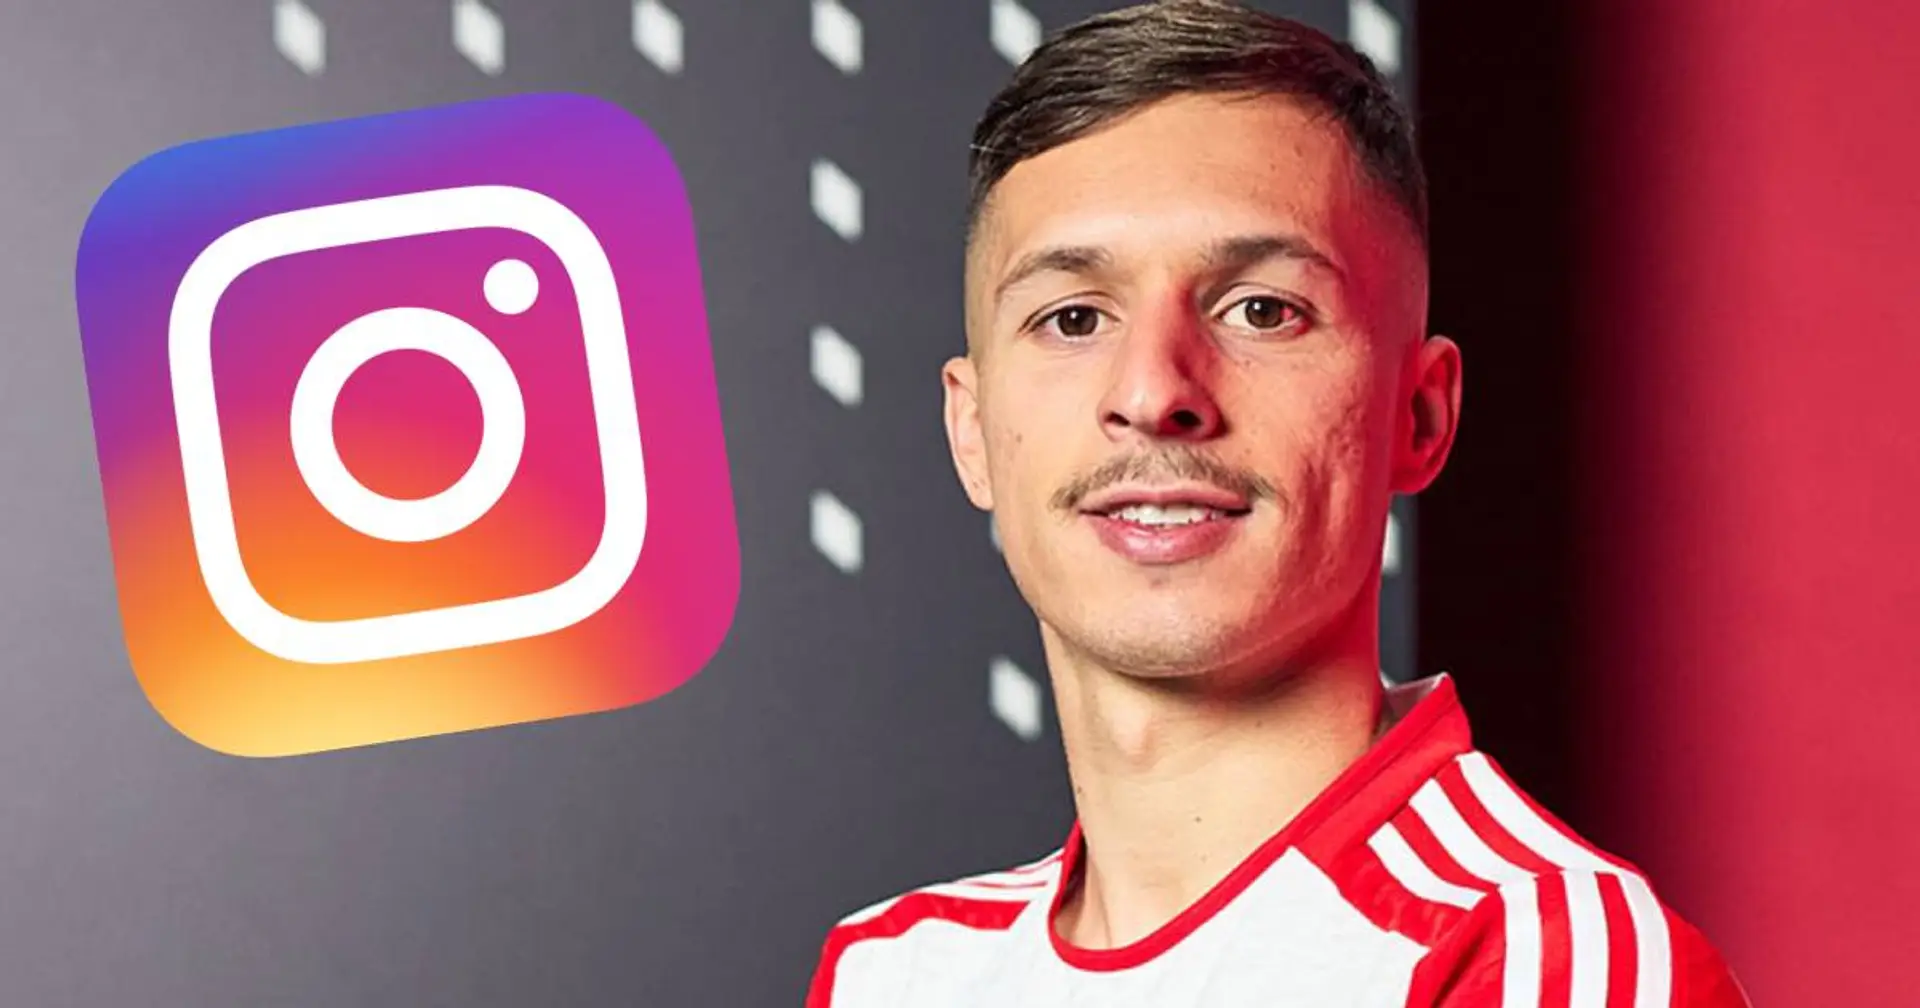 "Du hast keine Ehre": Nach Bayern-Wechsel kassiert Zaragoza Shitstorm auf Instagram